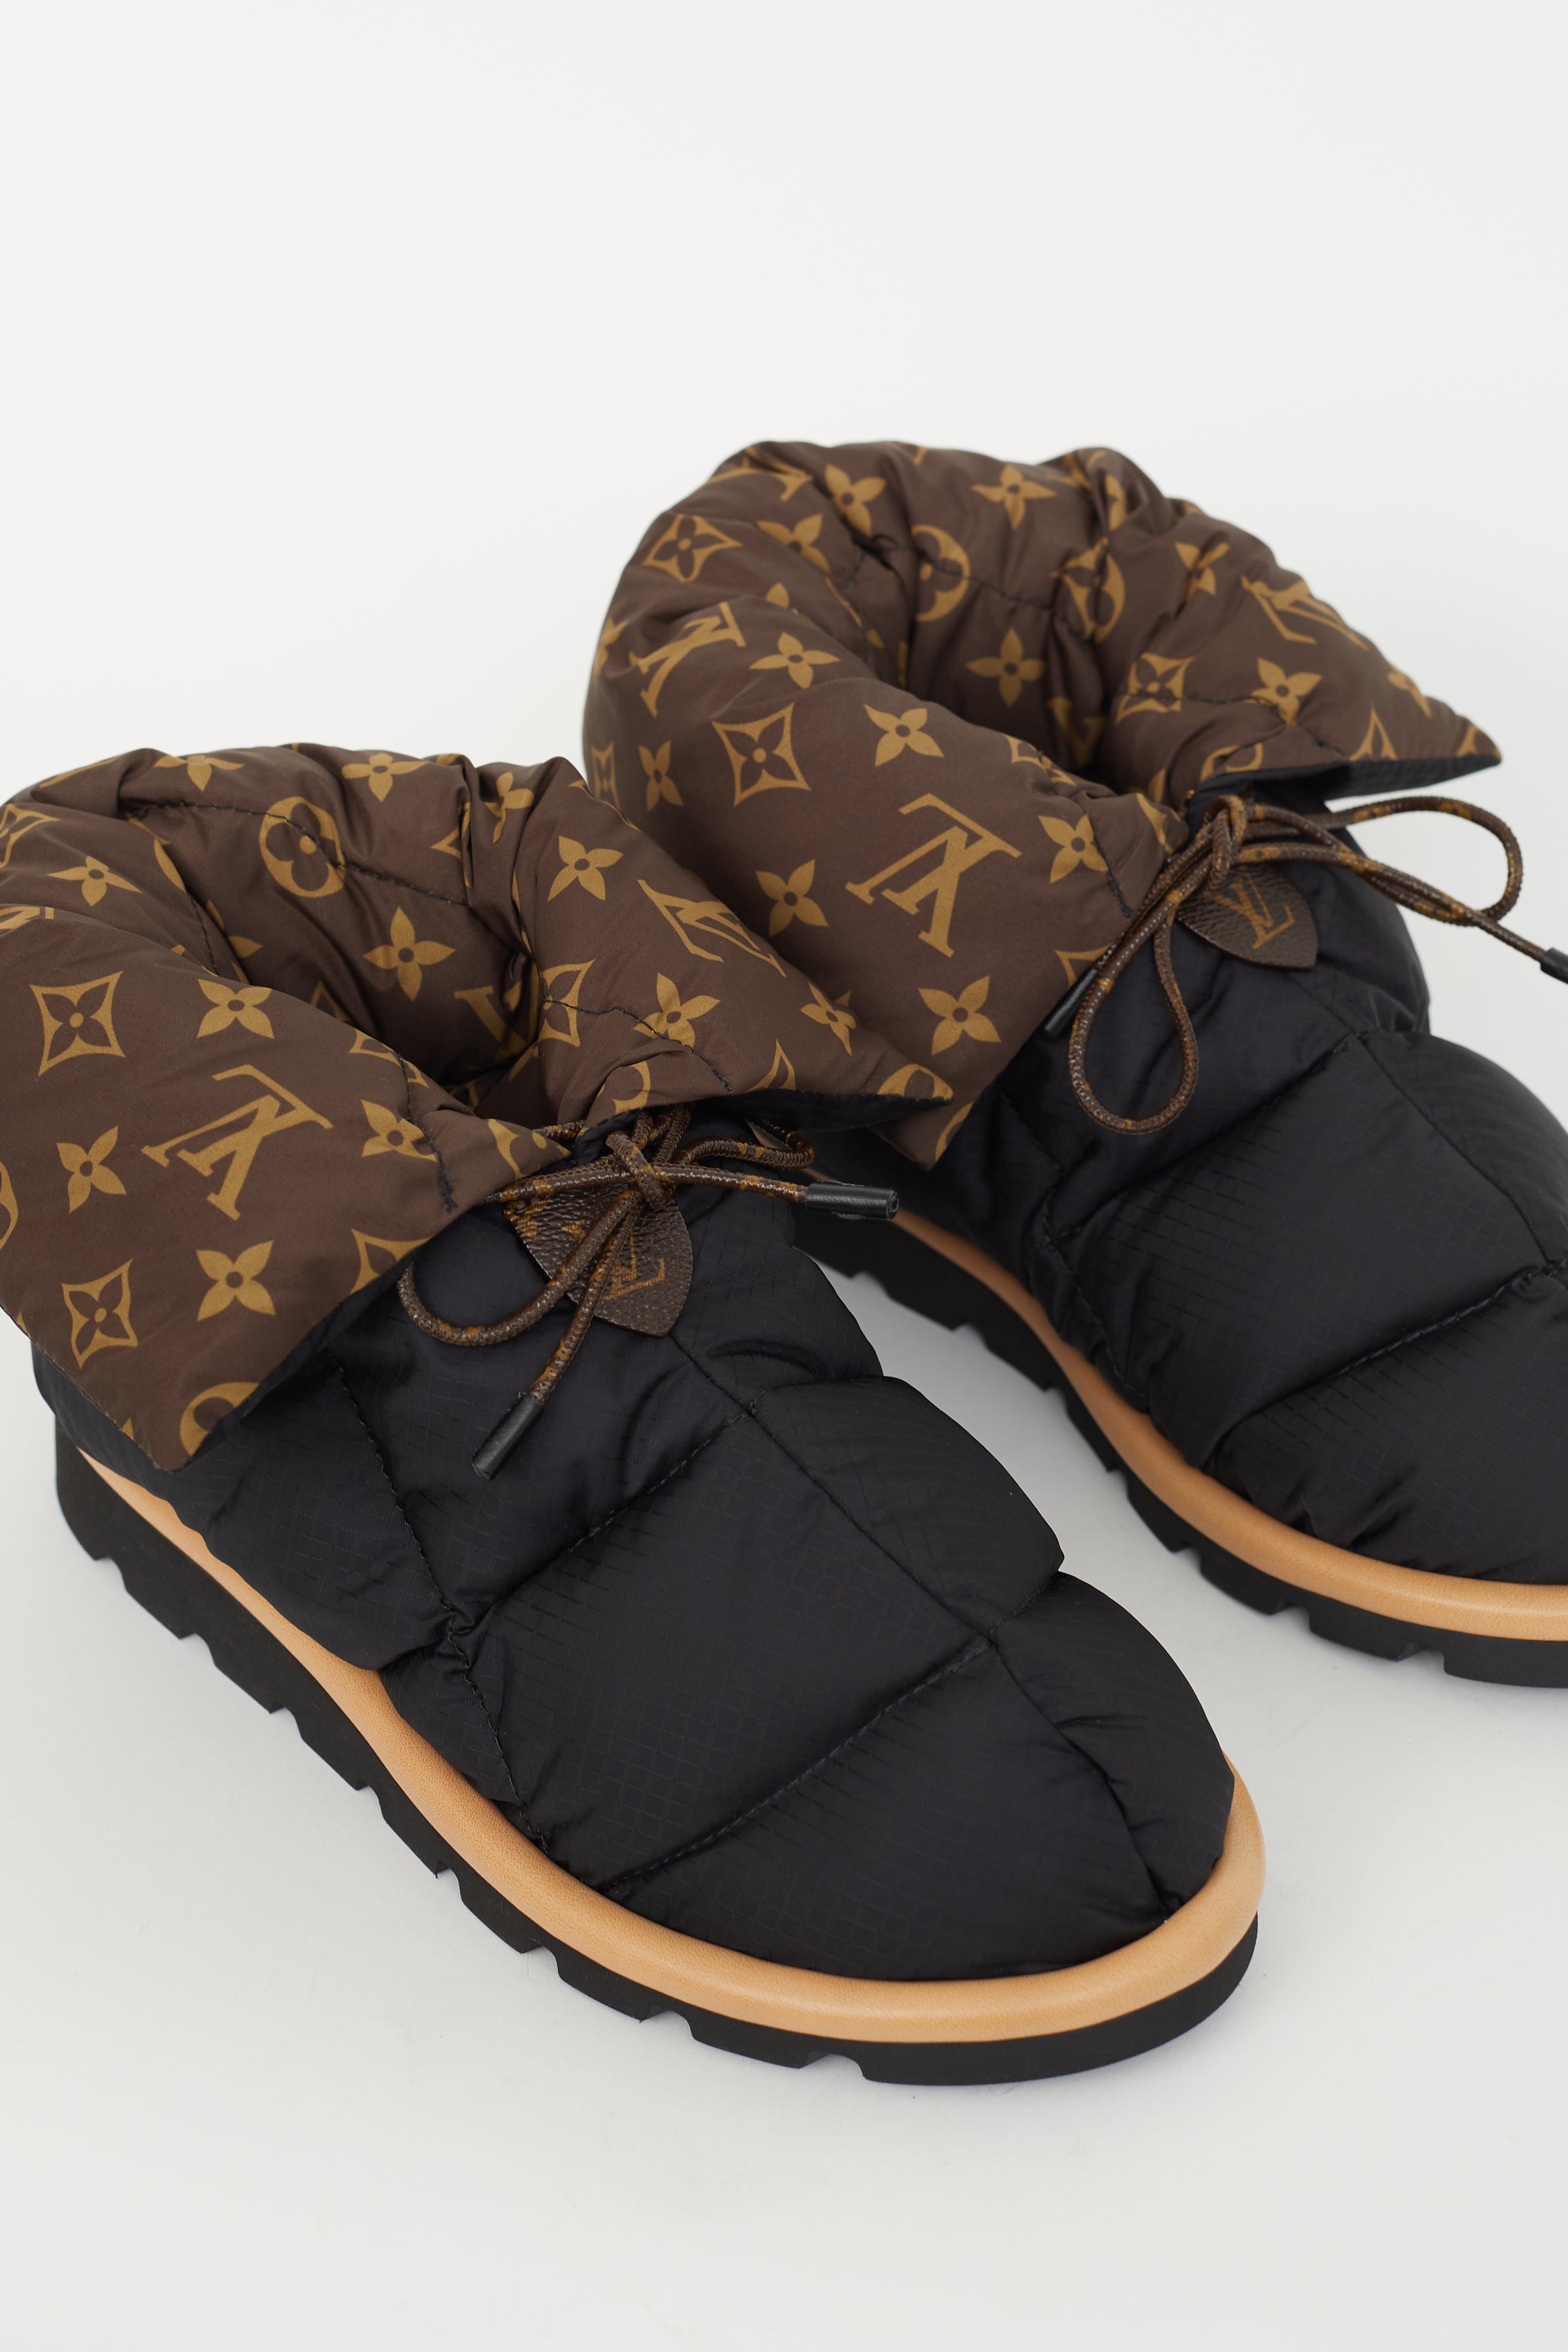 Louis Vuitton Pillow boots black 39